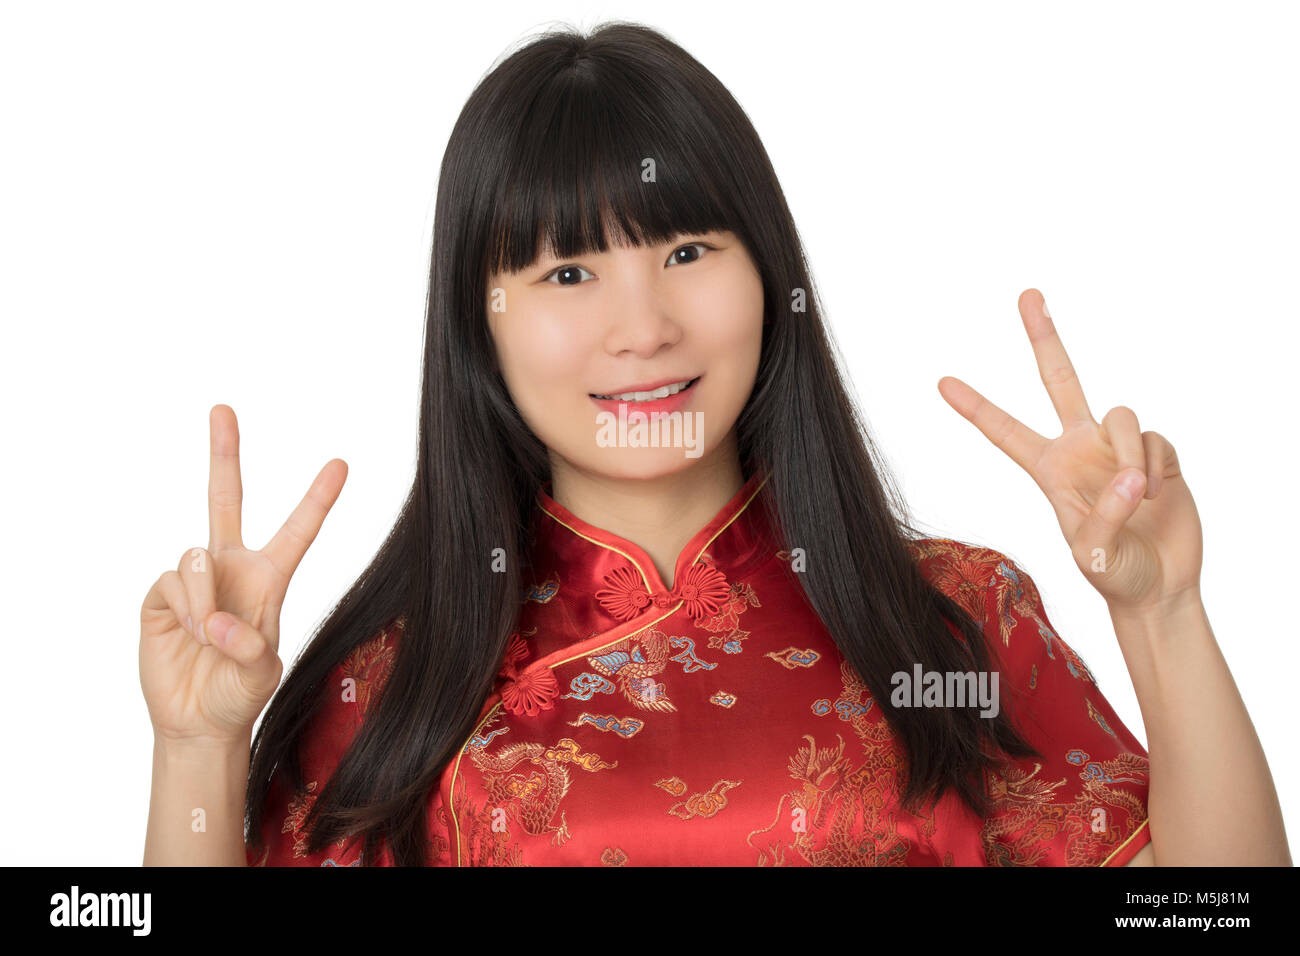 Schöne chinesische Frau das Tragen einer Tracht bekannt als Cheongsam oder Chipao und geben das friedenszeichen Geste isoliert auf einem weißen backgrou Stockfoto